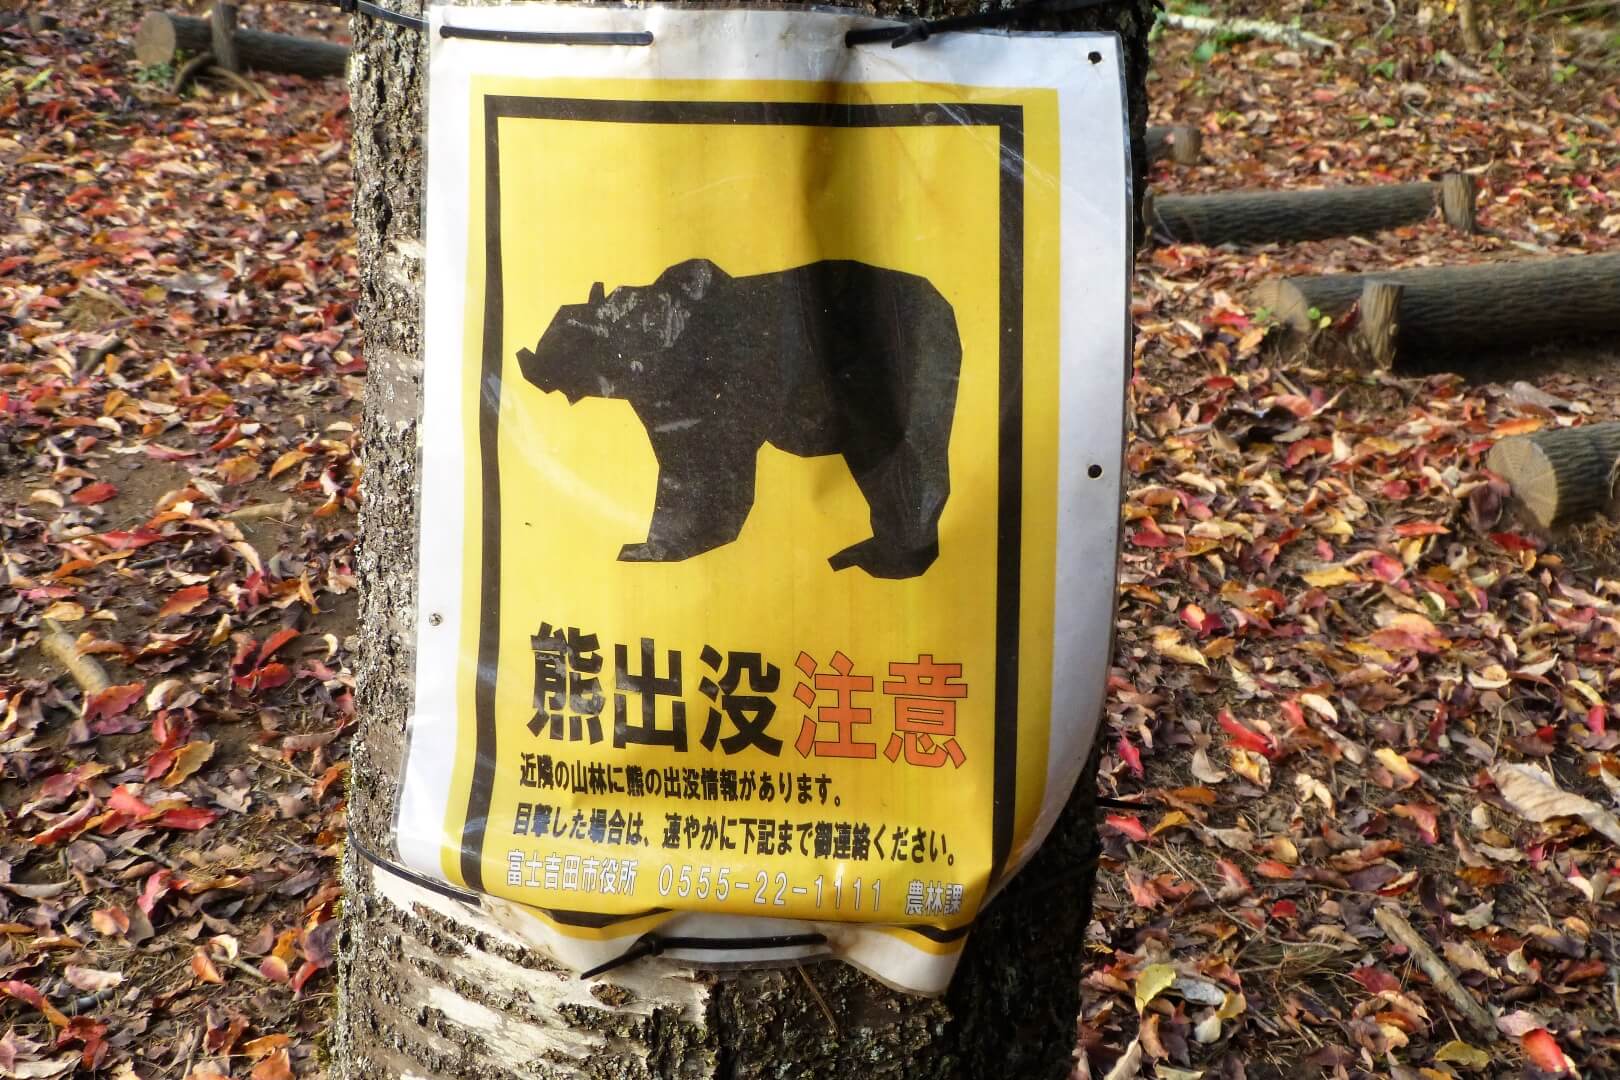 新倉山浅間公園 「熊出没注意」の貼紙